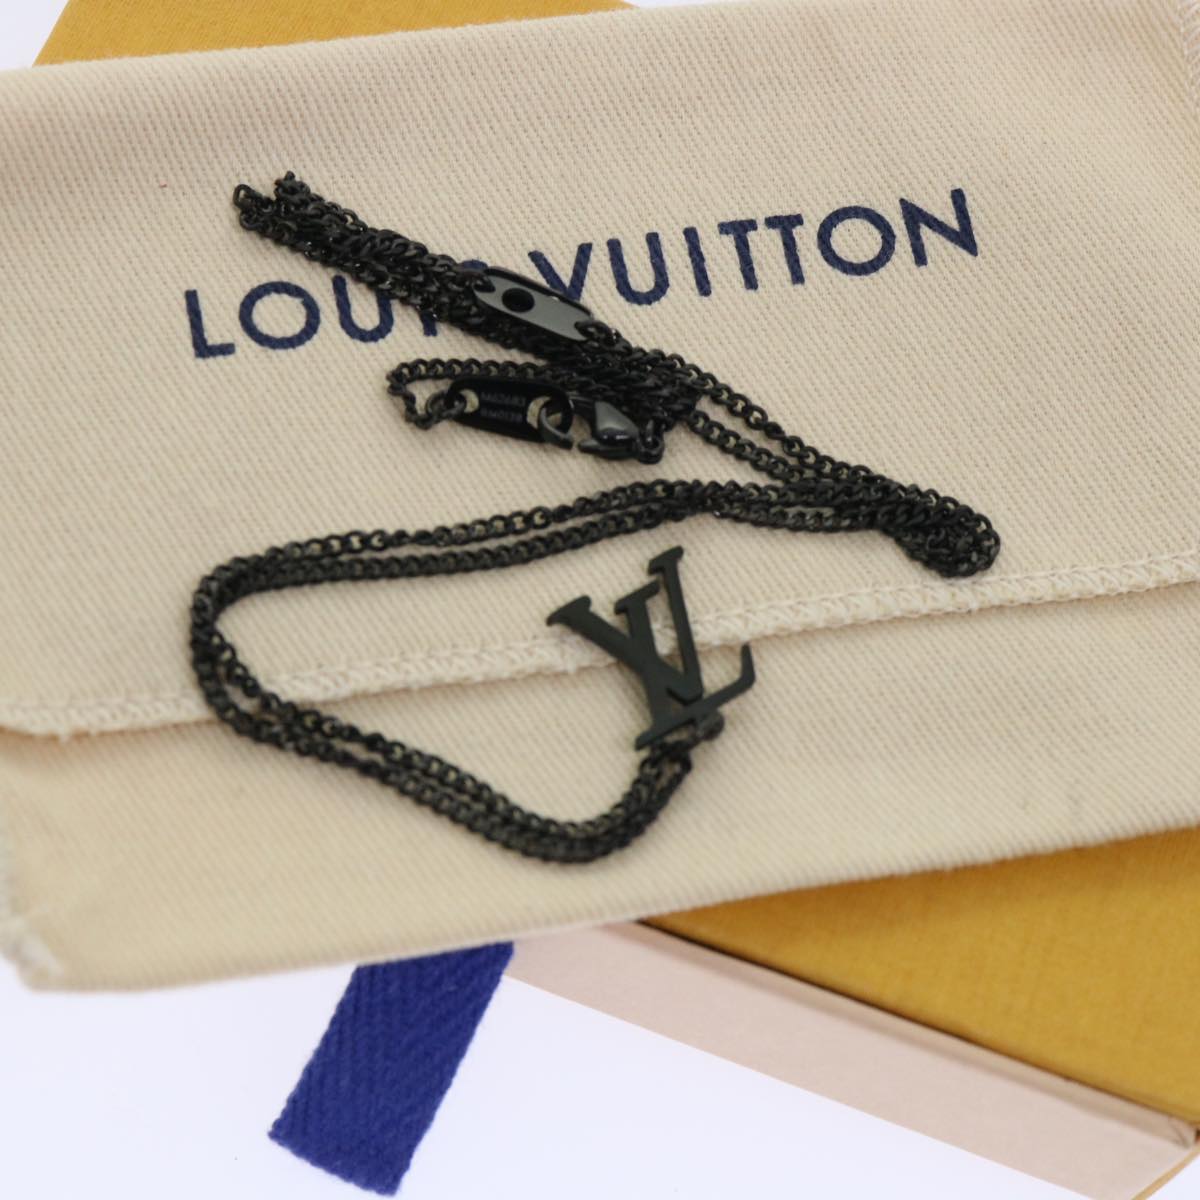 LOUIS VUITTON Adjustable Collier LV Upside Down Necklace Black M62683 Auth 52449